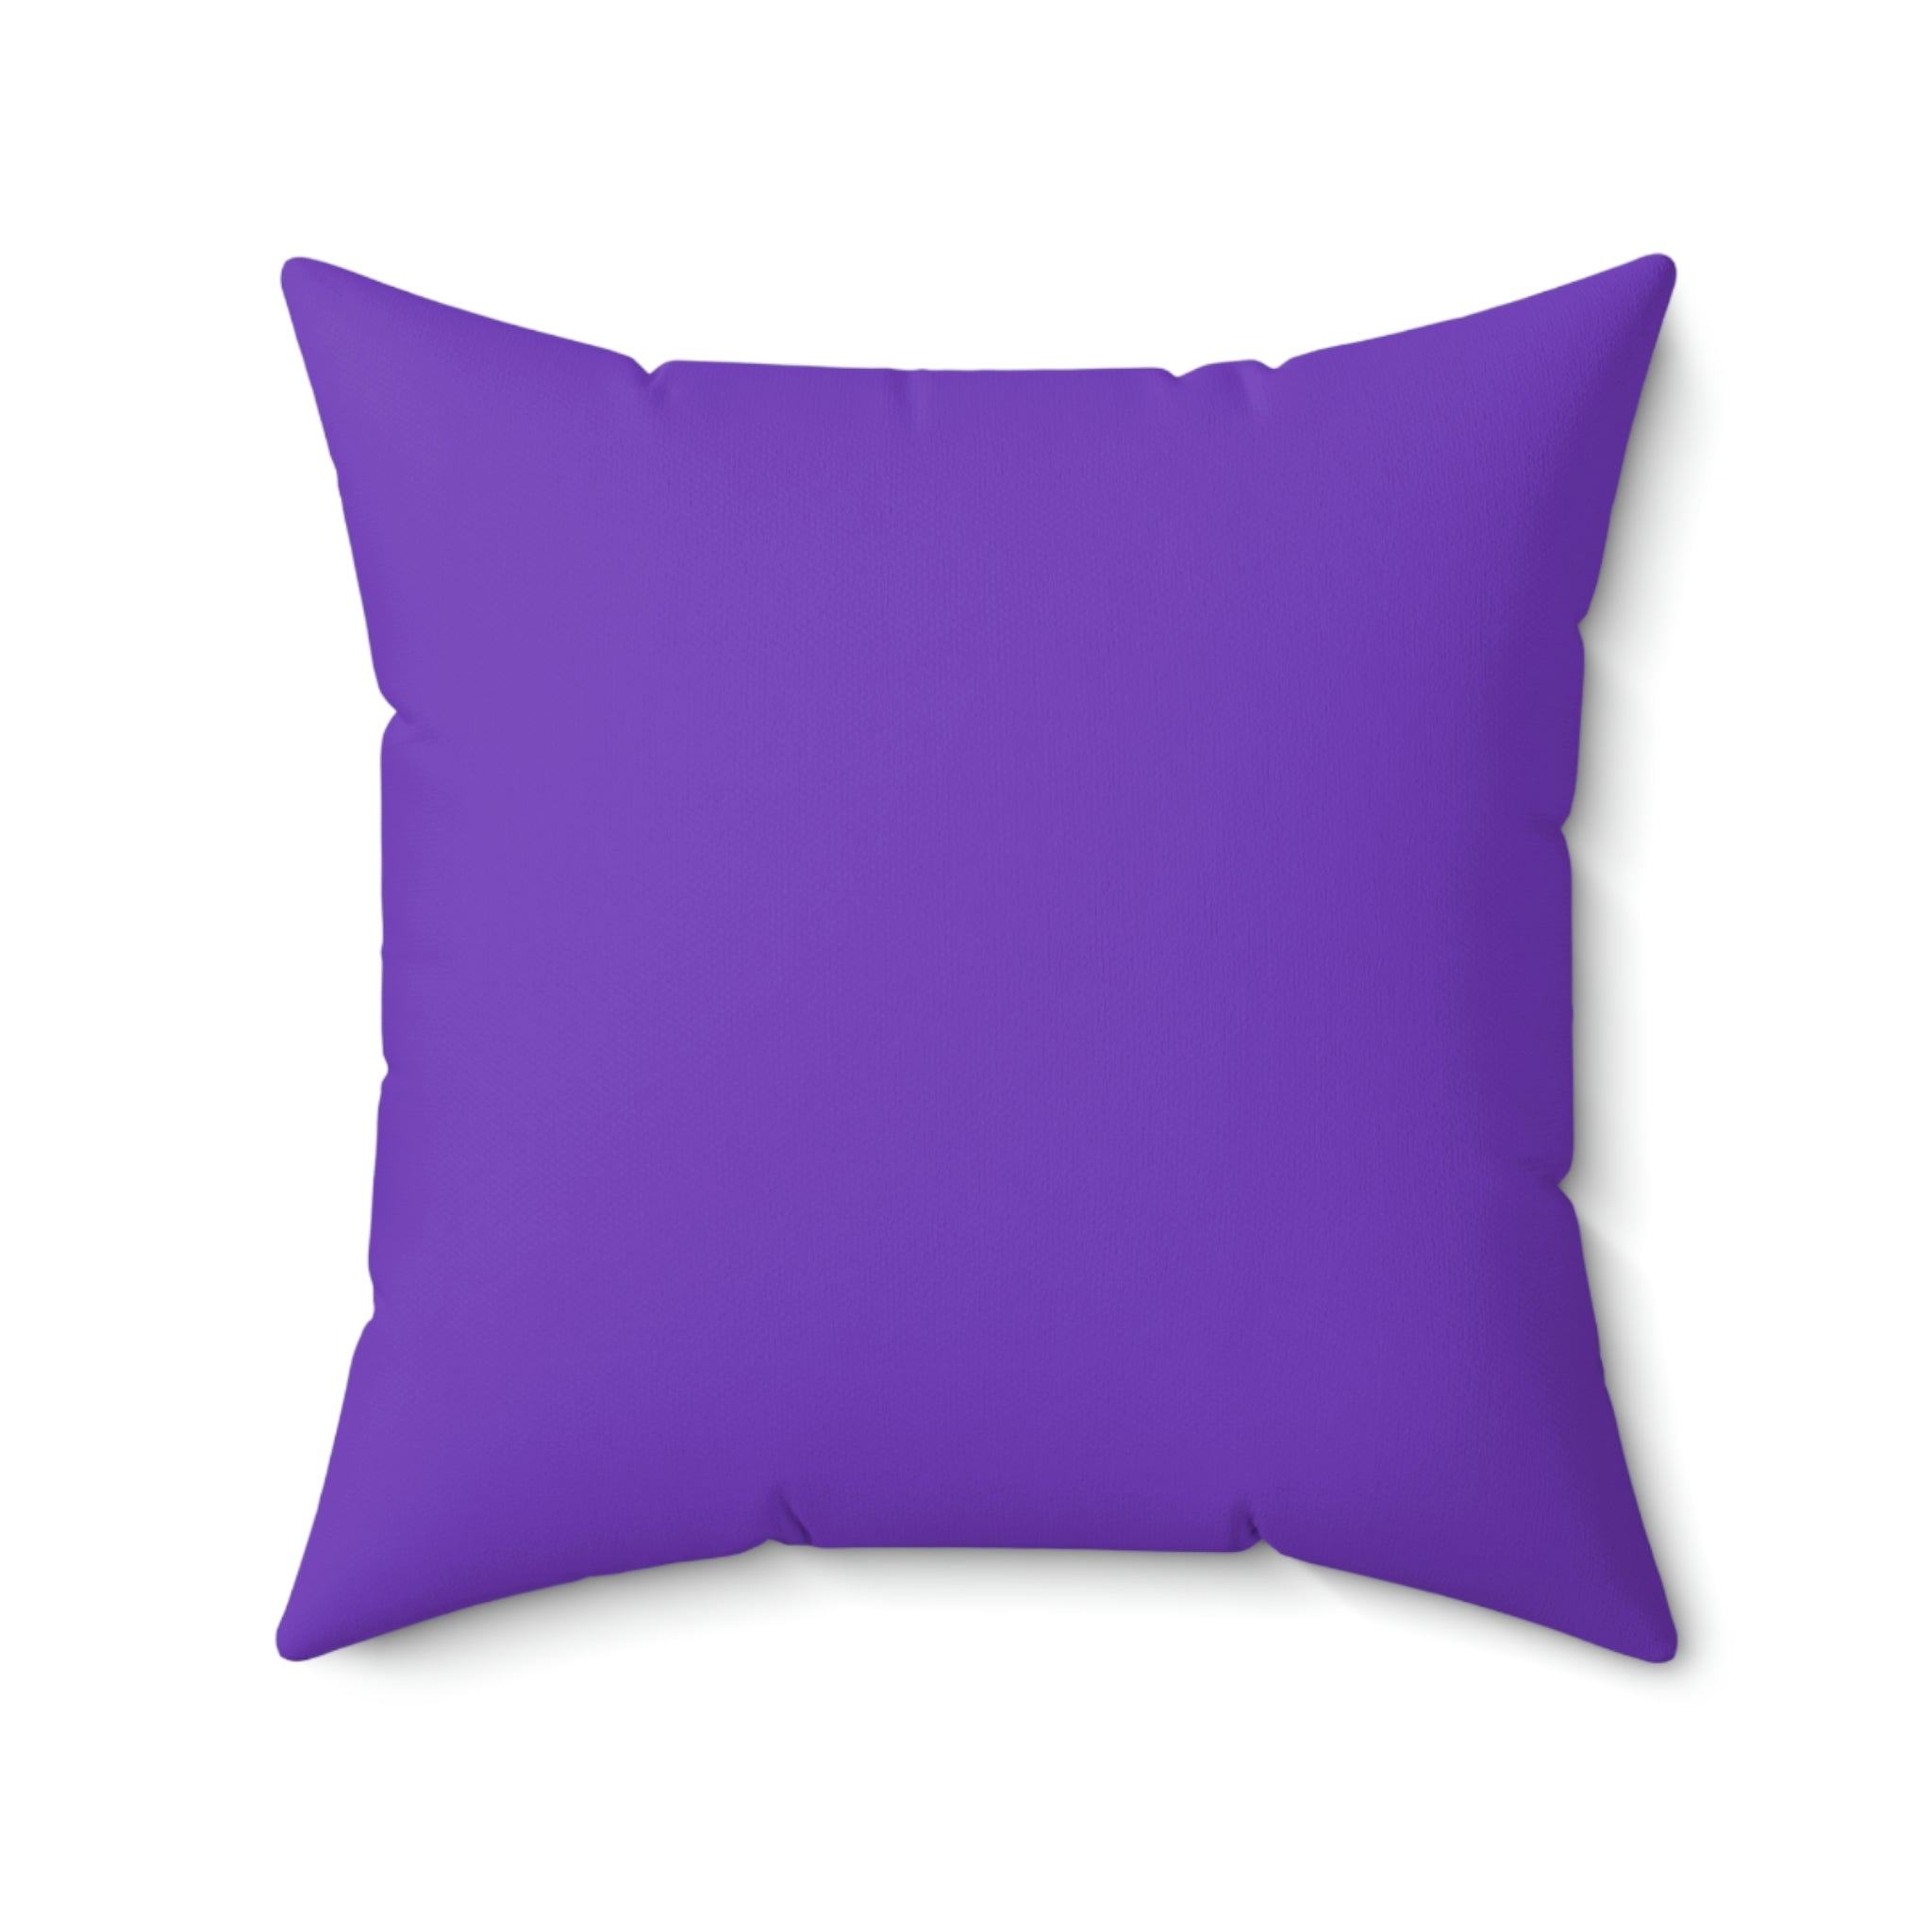 Spun Polyester Pillow Jack purple